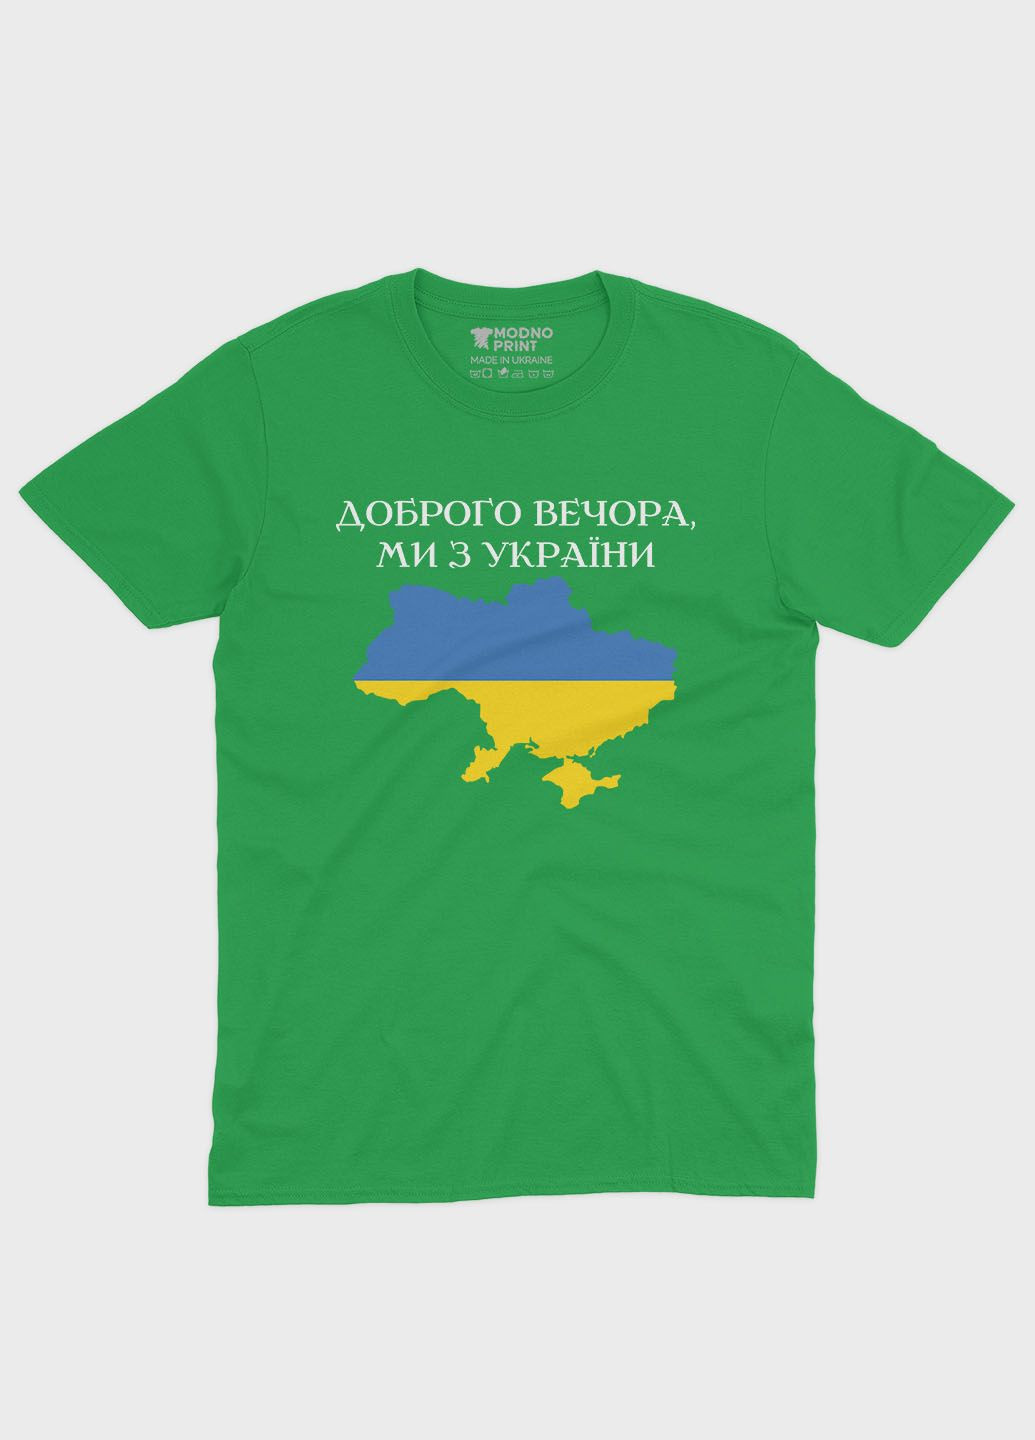 Зеленая демисезонная футболка для мальчика с патриотическим принтом добрый вечер (ts001-2-keg-005-1-048-b) Modno